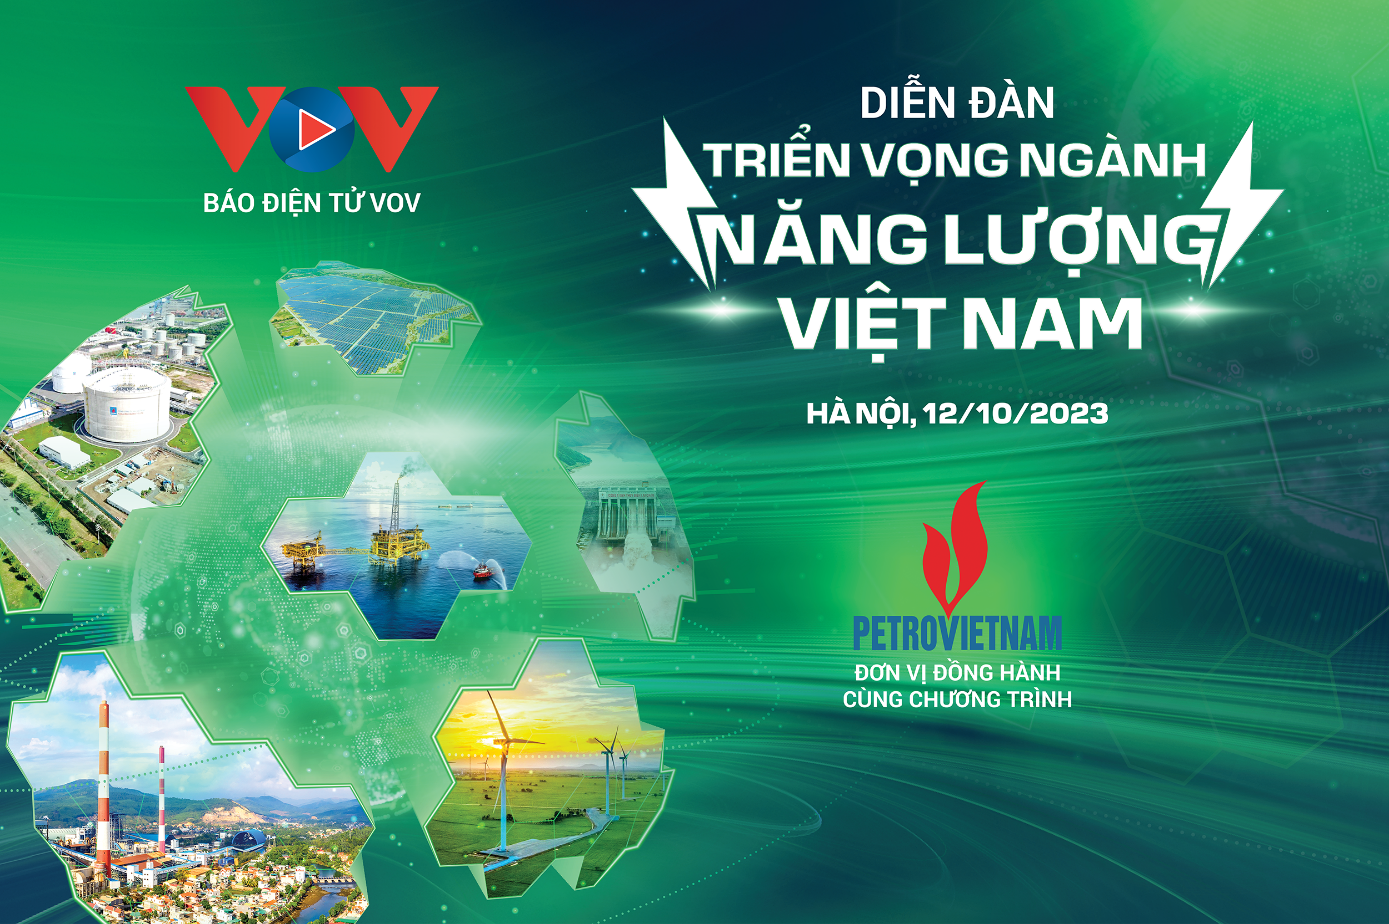 Diễn đàn triển vọng ngành năng lượng Việt Nam